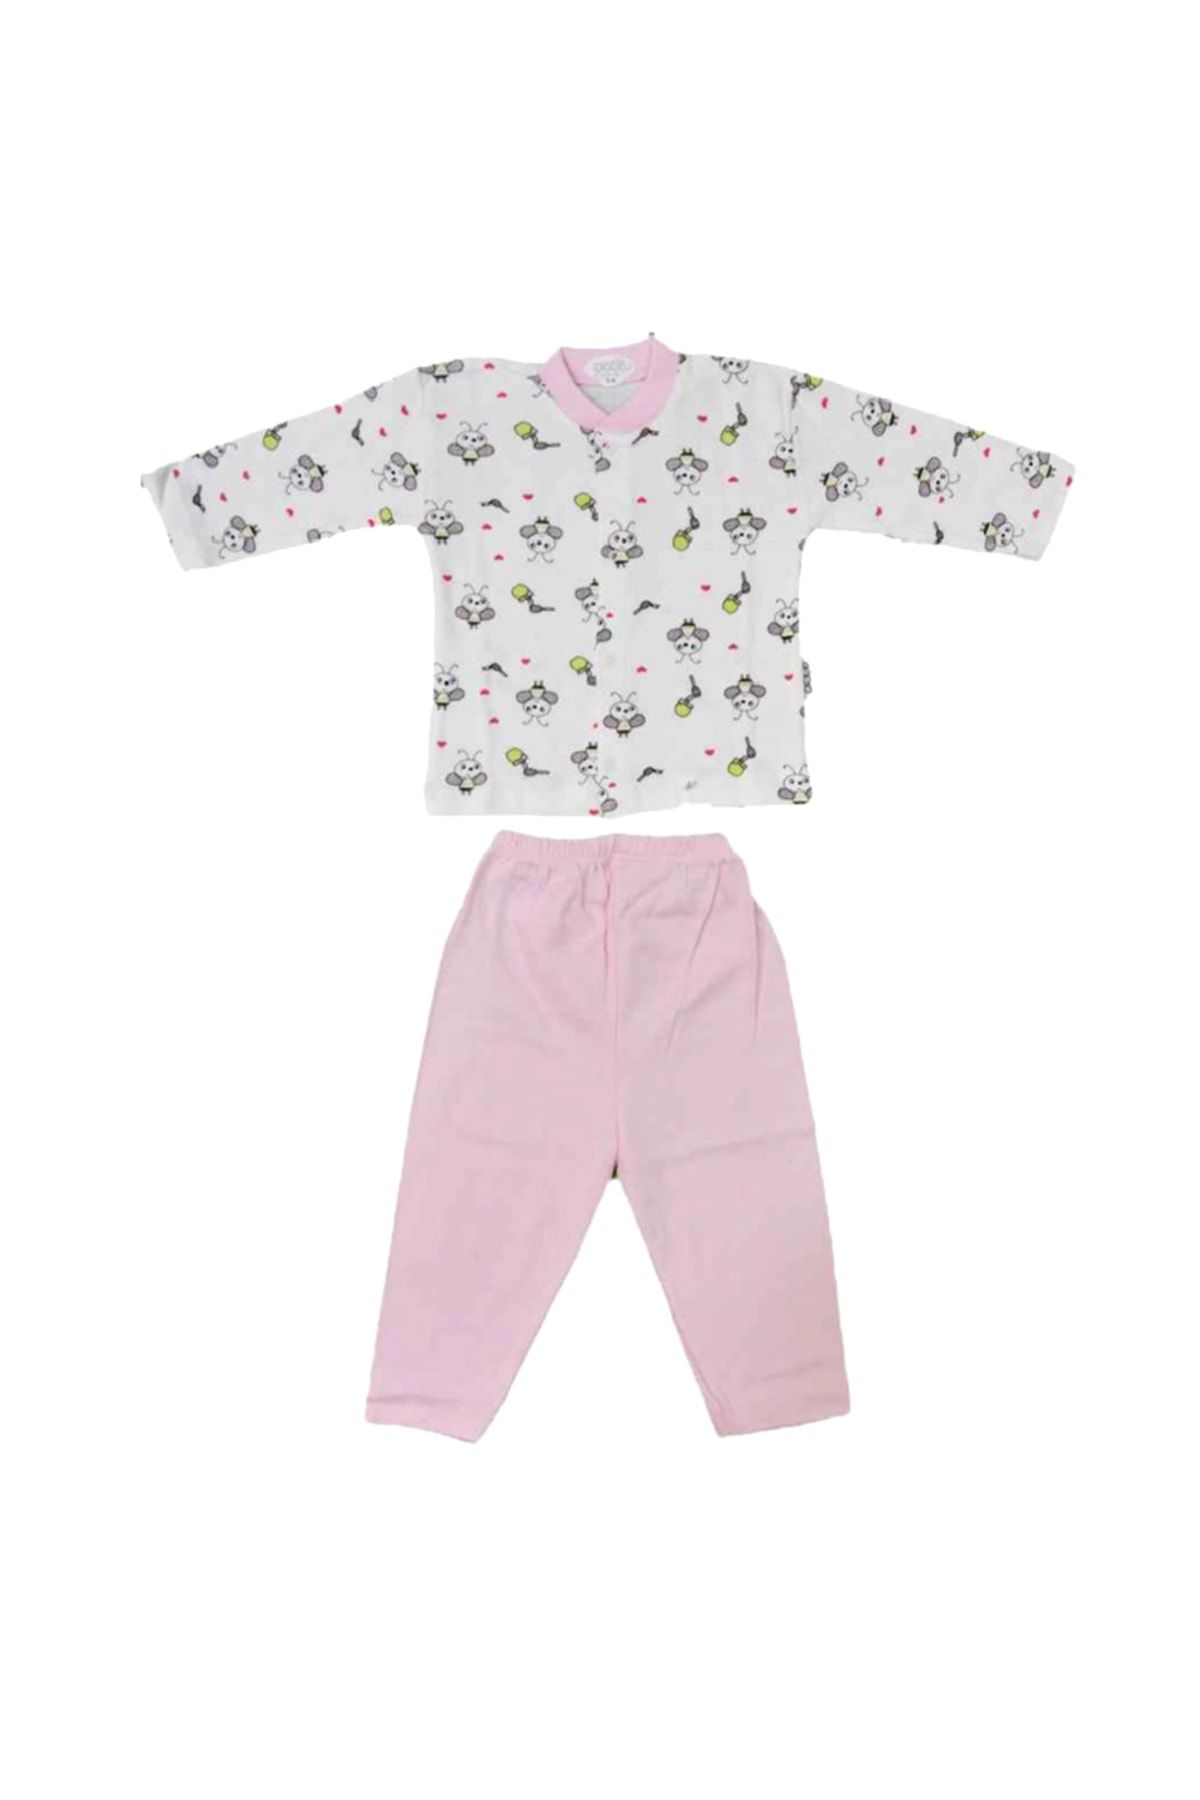 Sebi Bebe Bebek Pijama Takımı Desenli Arı Baskılı